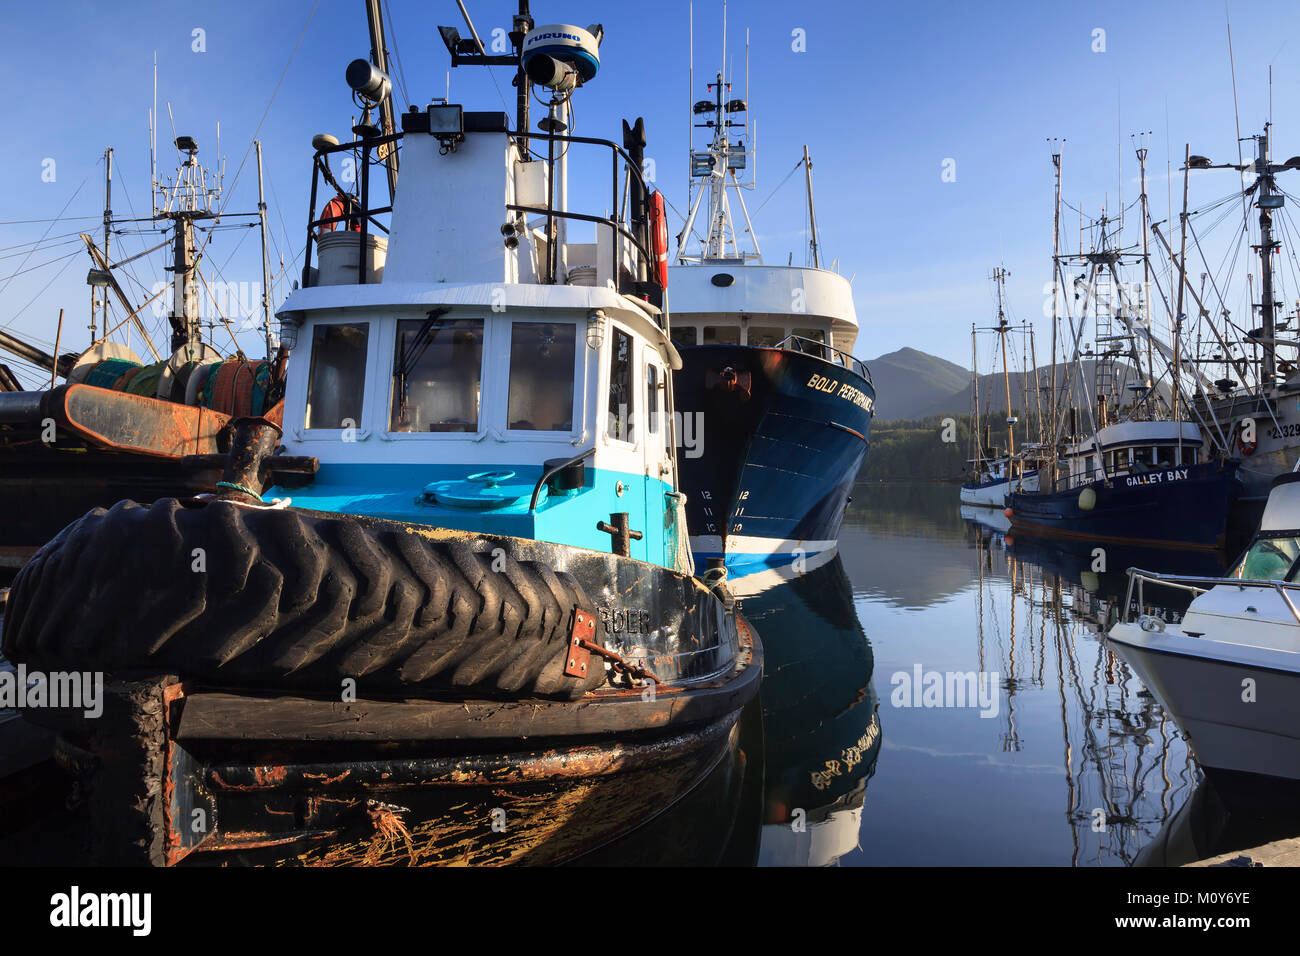 Les bateaux de pêche et des remorqueurs, Ucluelet Harbour, île de Vancouver, Colombie-Britannique, Canada. Banque D'Images